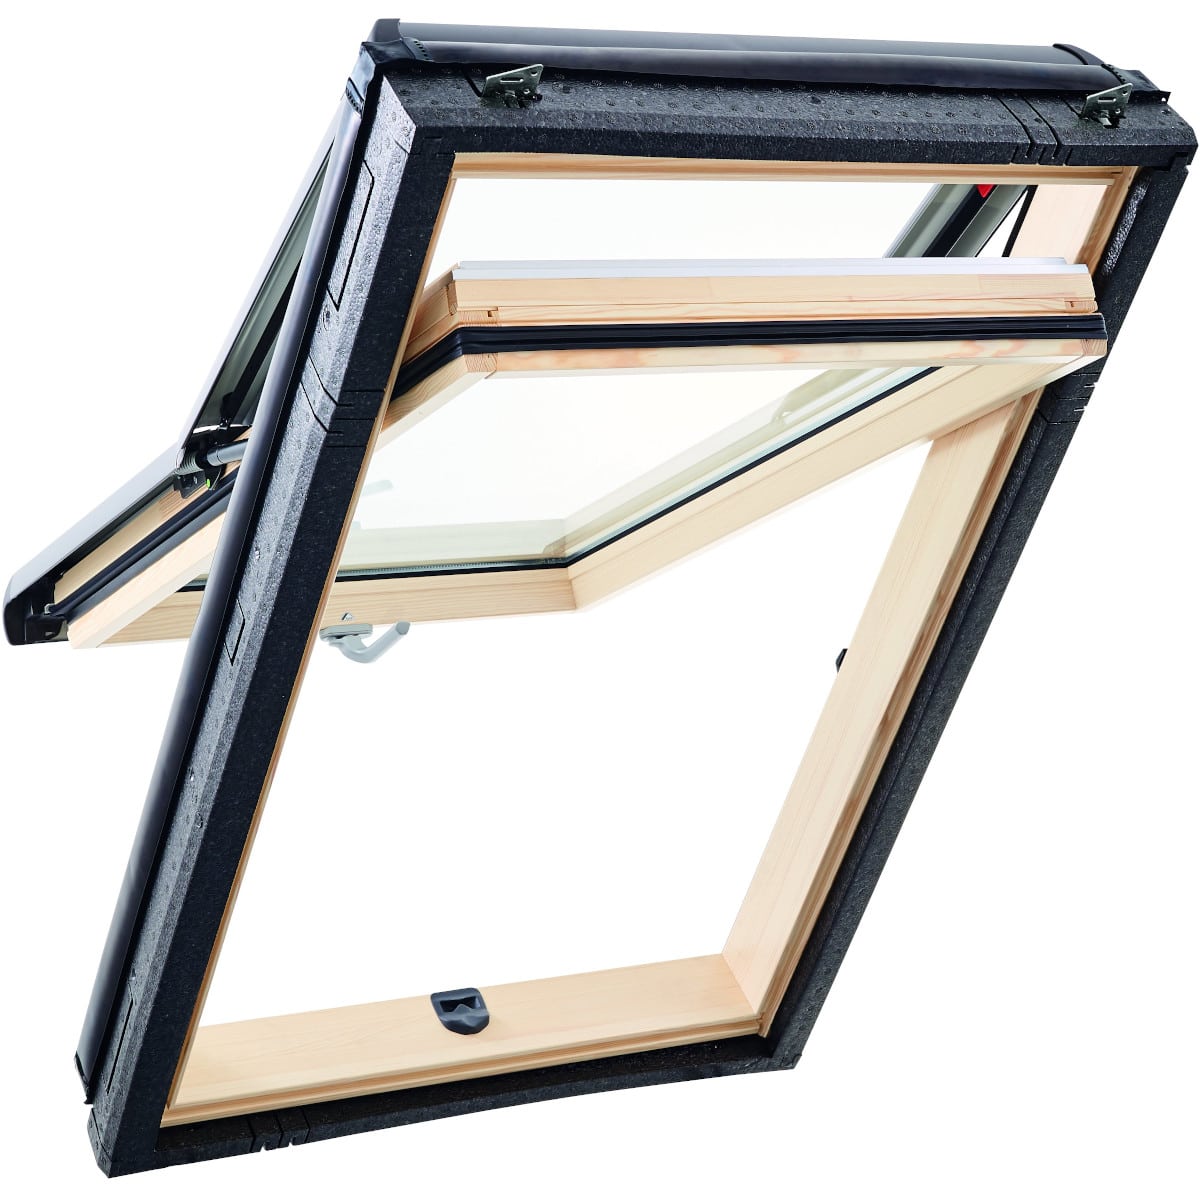 Окно мансардное деревянное с нижней ручкой Roto R78 H200.1 камерный стеклопакет. ThermoBlock WD.